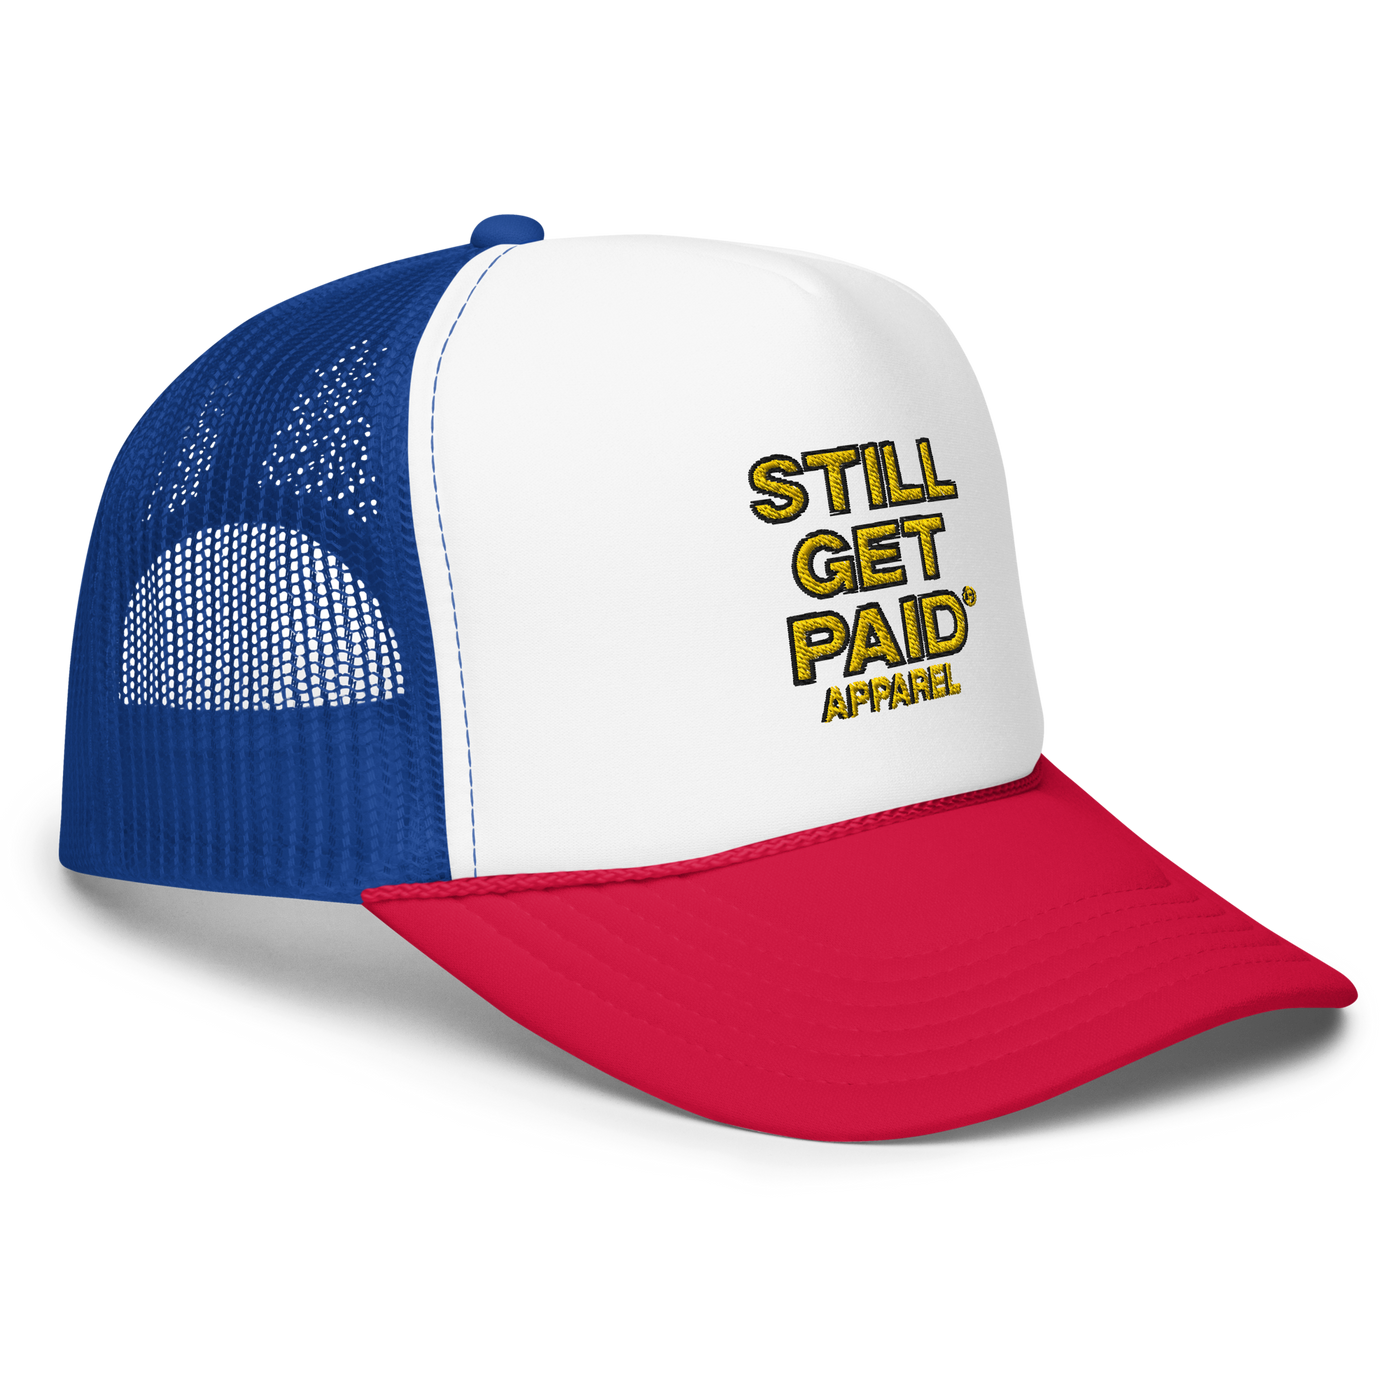 STILLGETPAID APPAREL Foam trucker hat